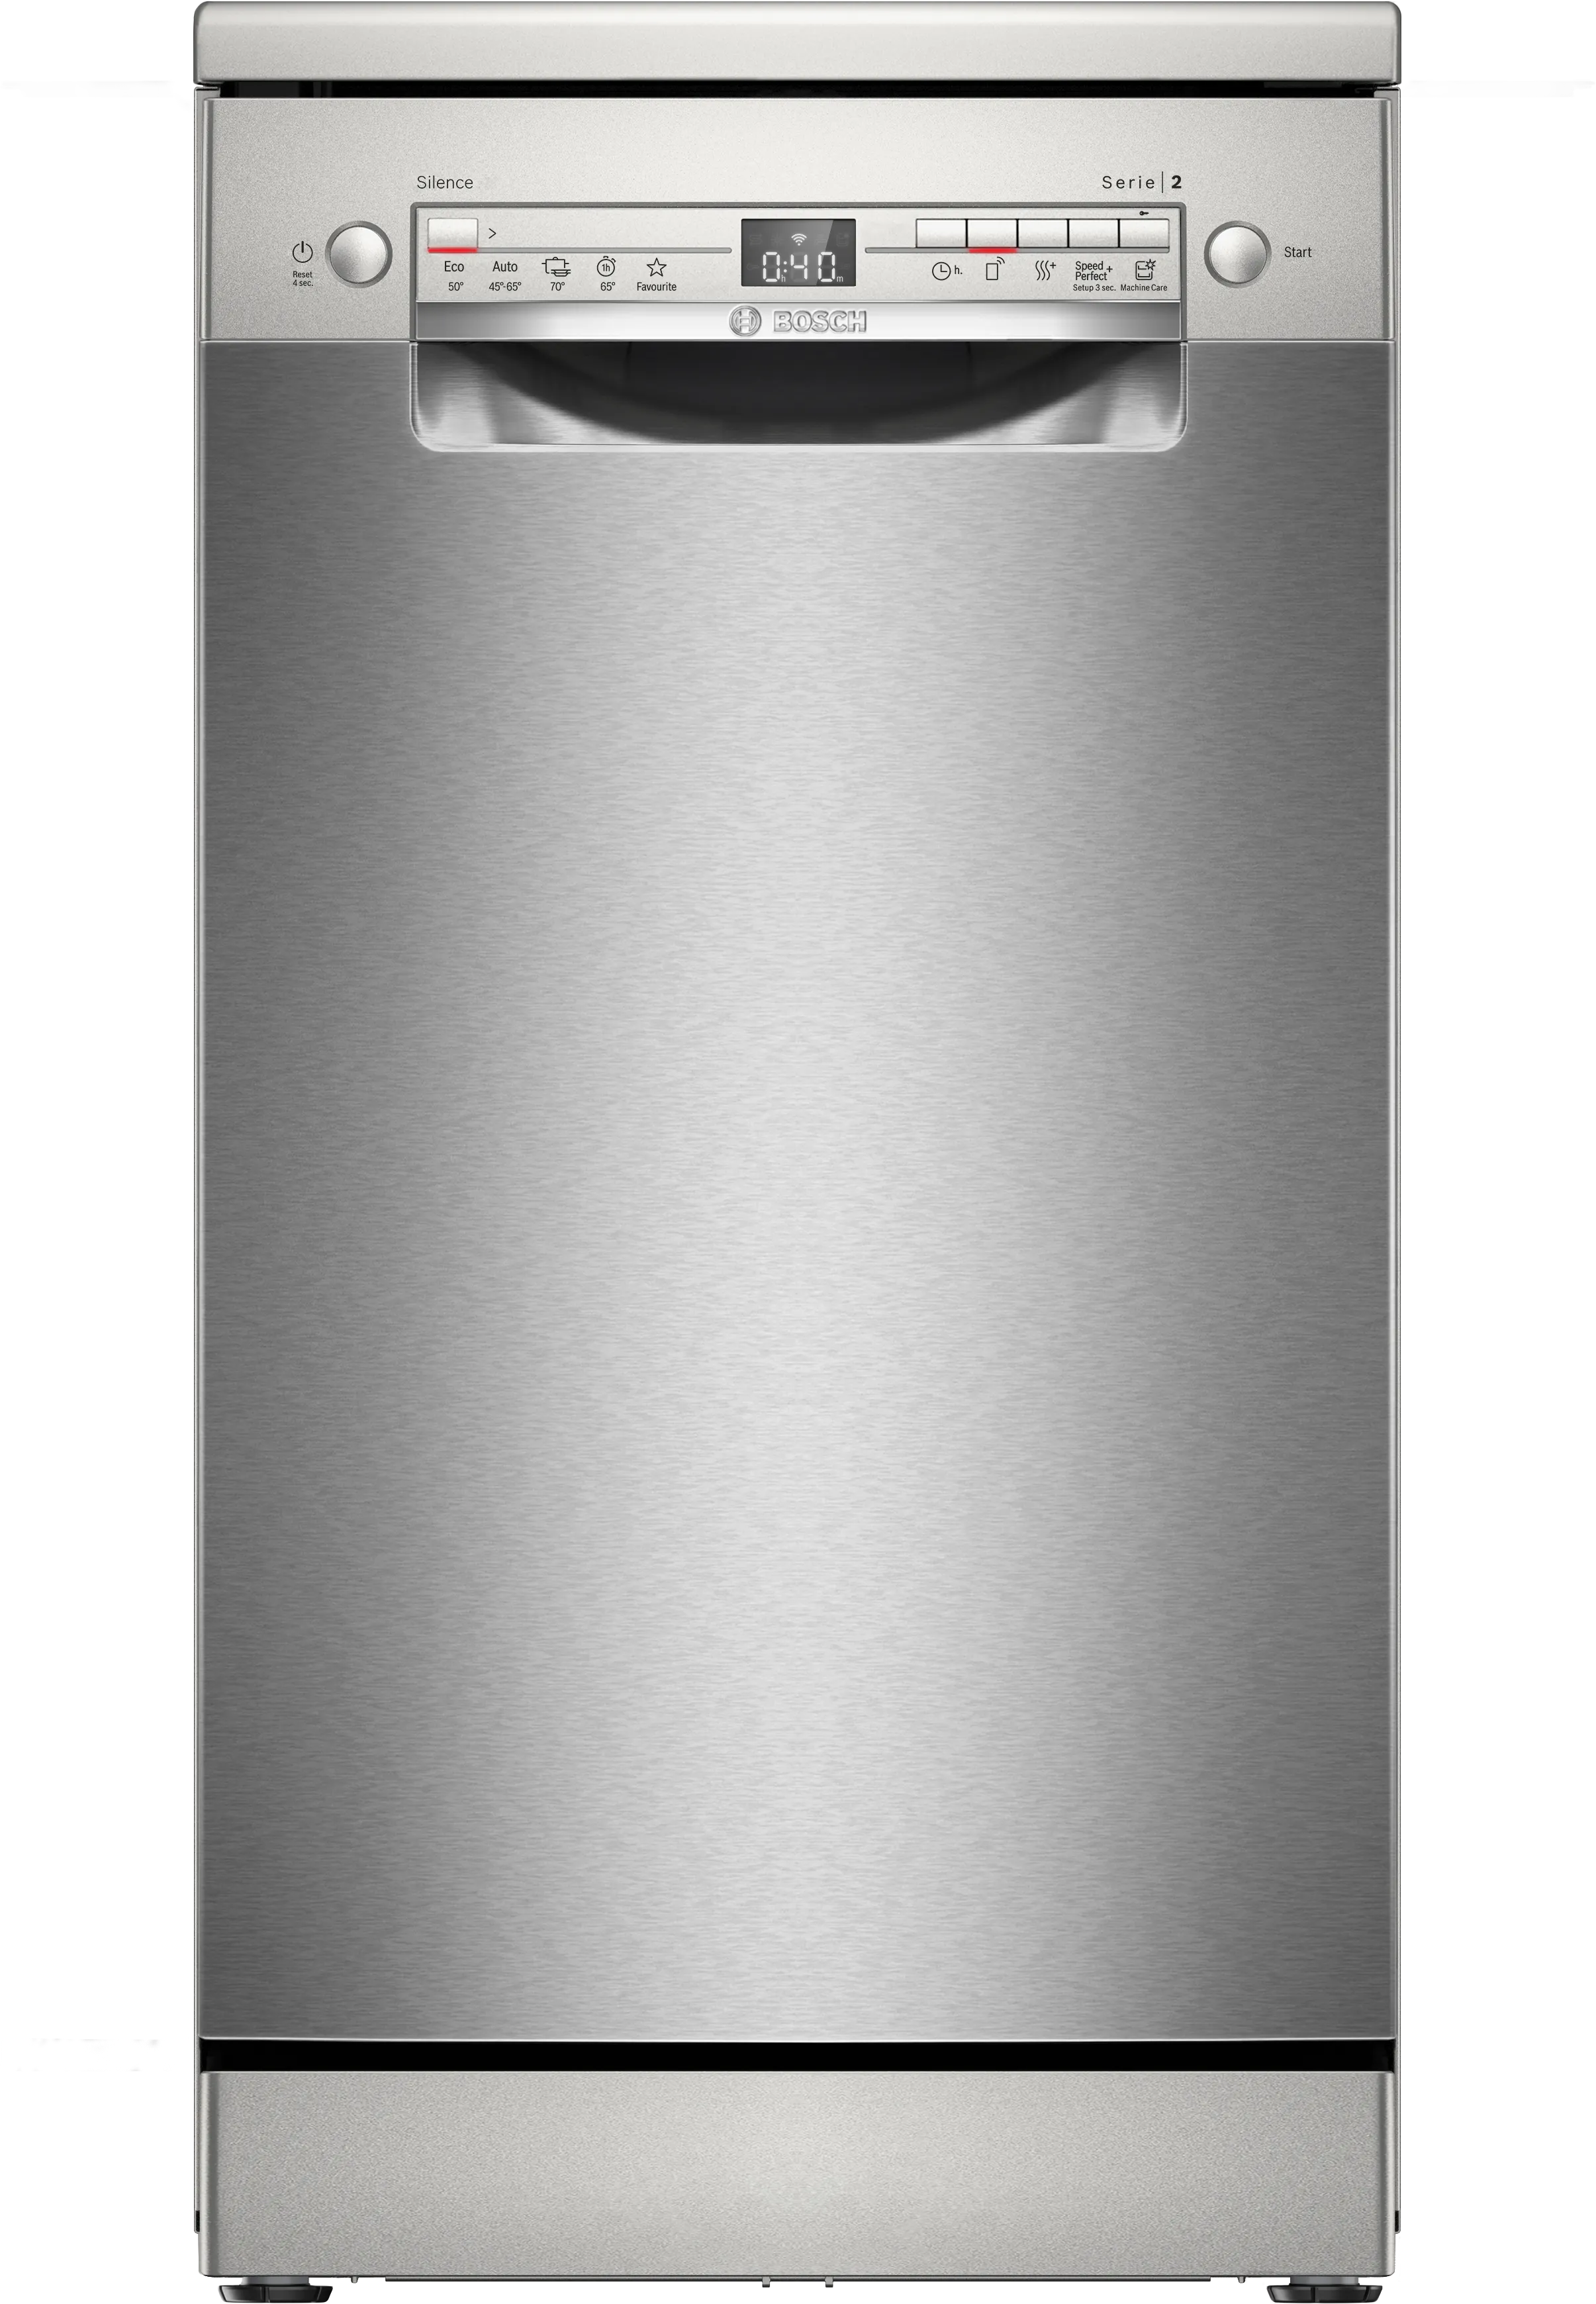 ซีรี่ 2 เครื่องล้างจานแบบตั้งพื้น 45 cm Brushed steel anti-fingerprint 